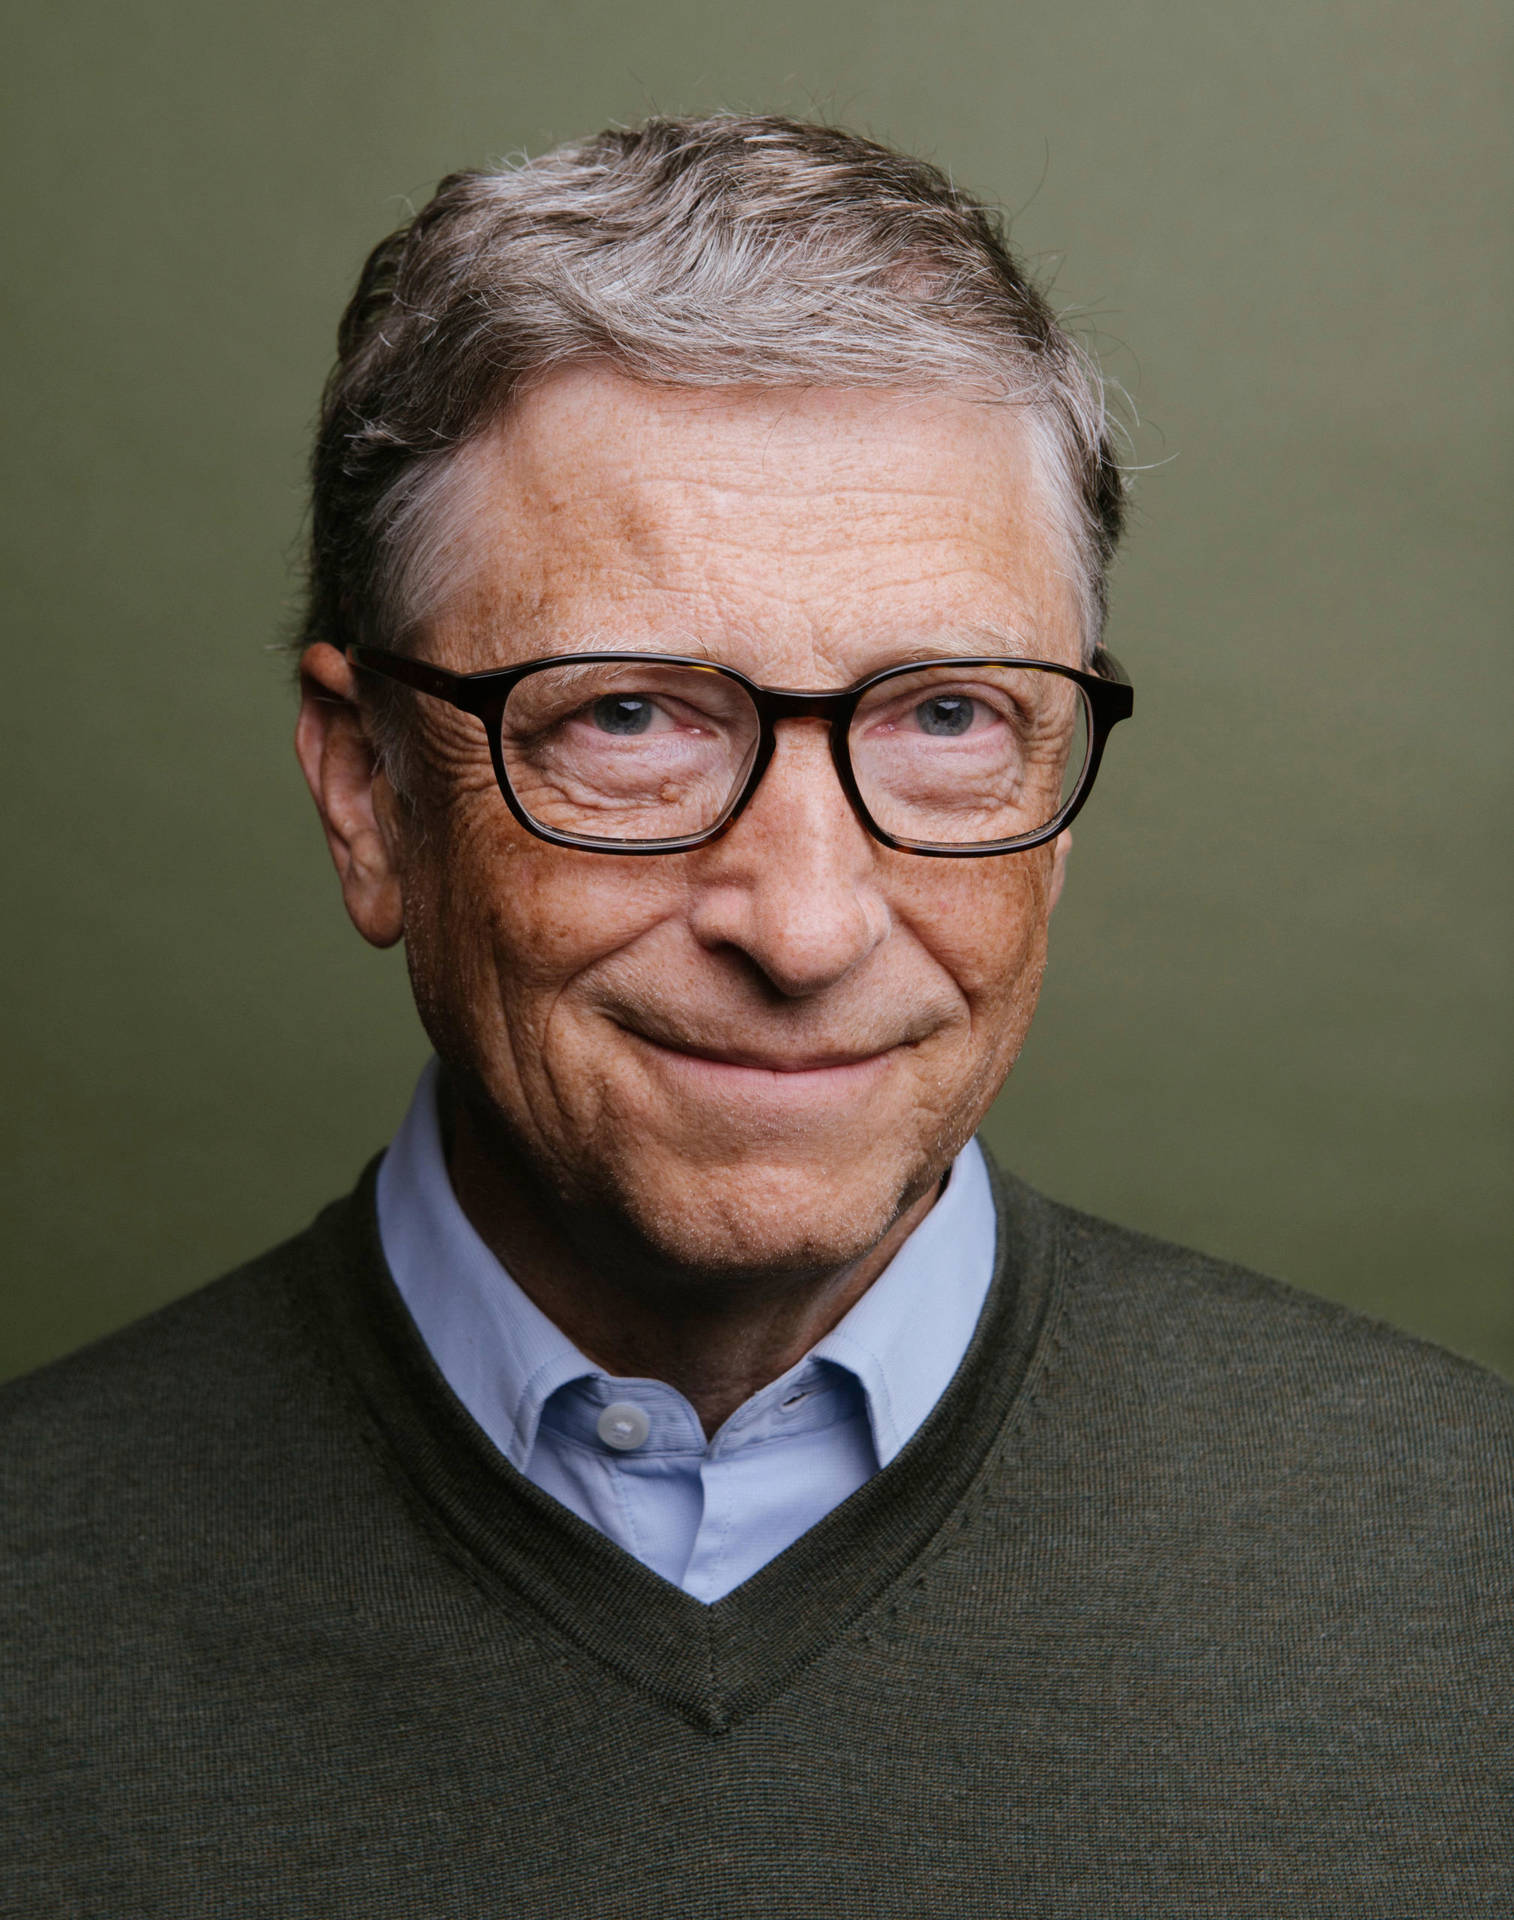 Bill Gates Portrait Background